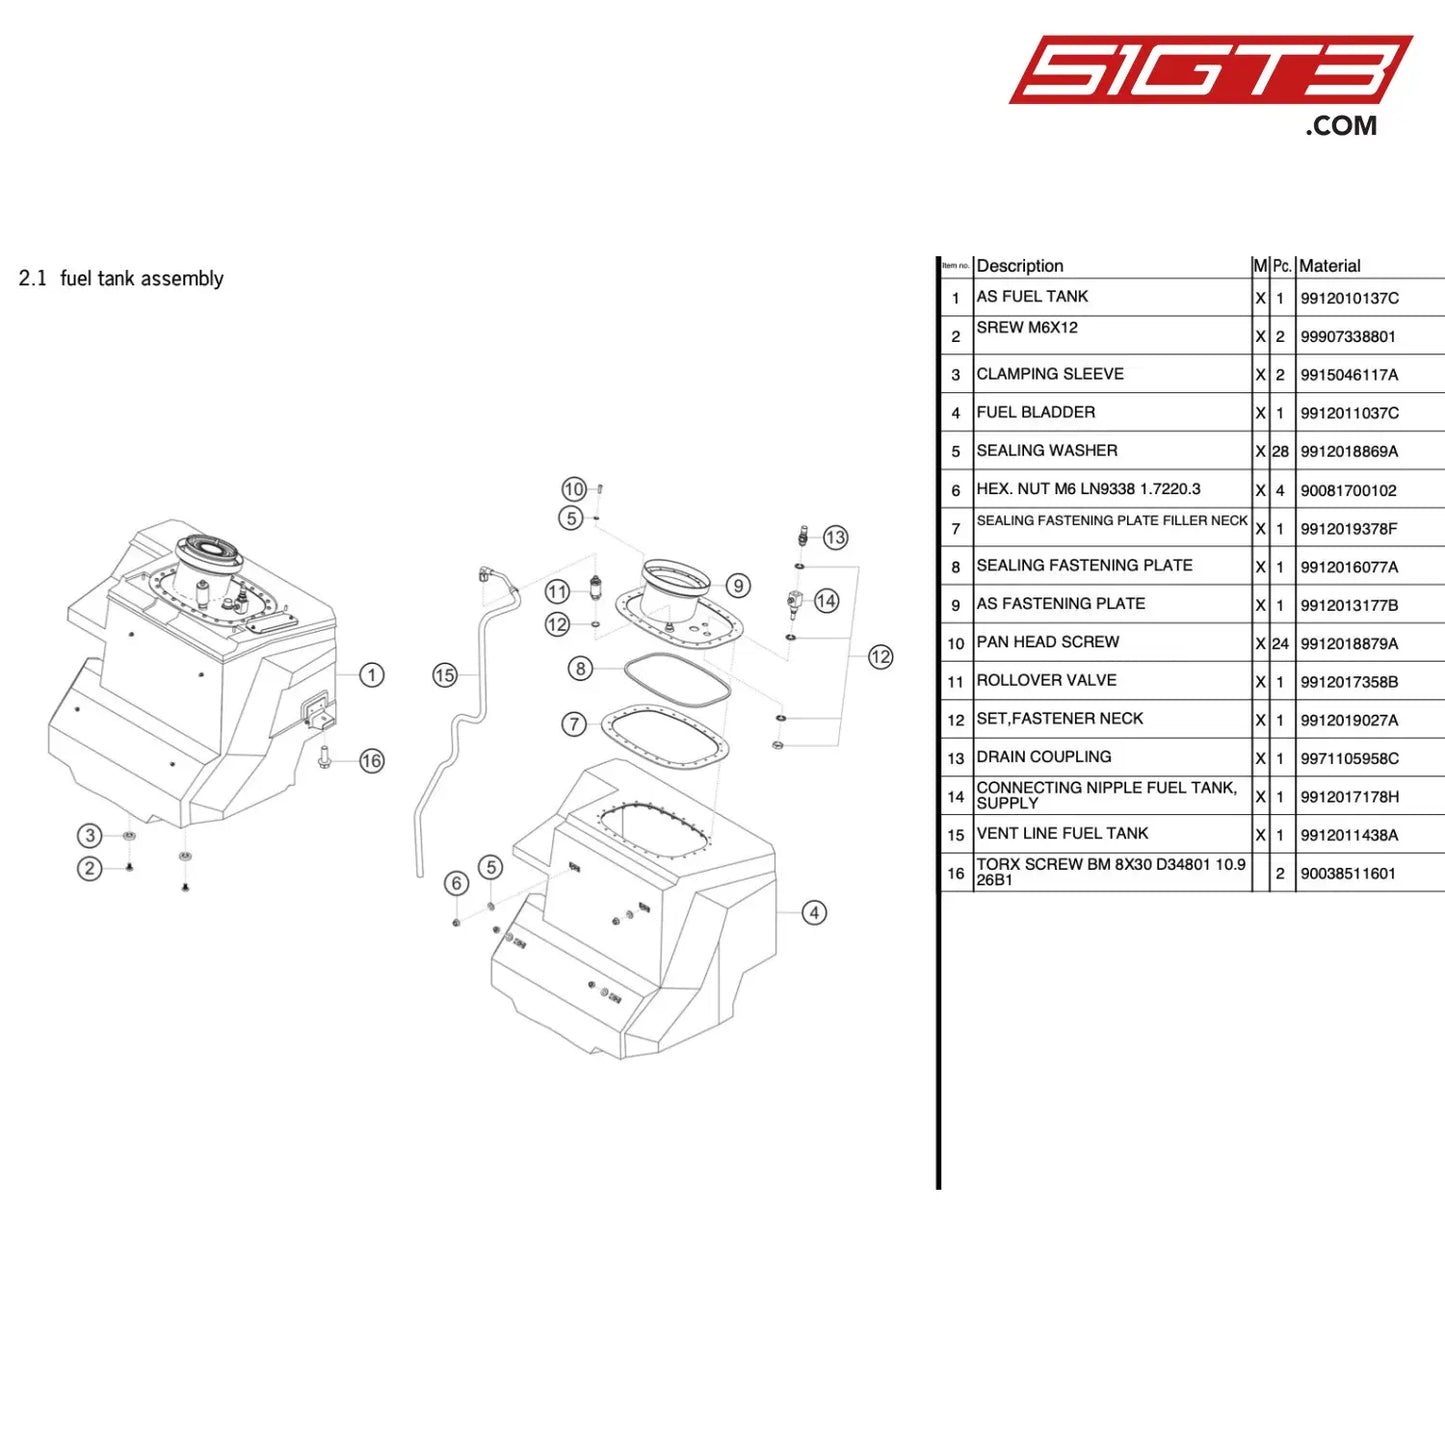 Clamping Sleeve - 9915046117A [Porsche 911 Gt3 R Type 991 (Gen 1)] Fuel Tank Assembly